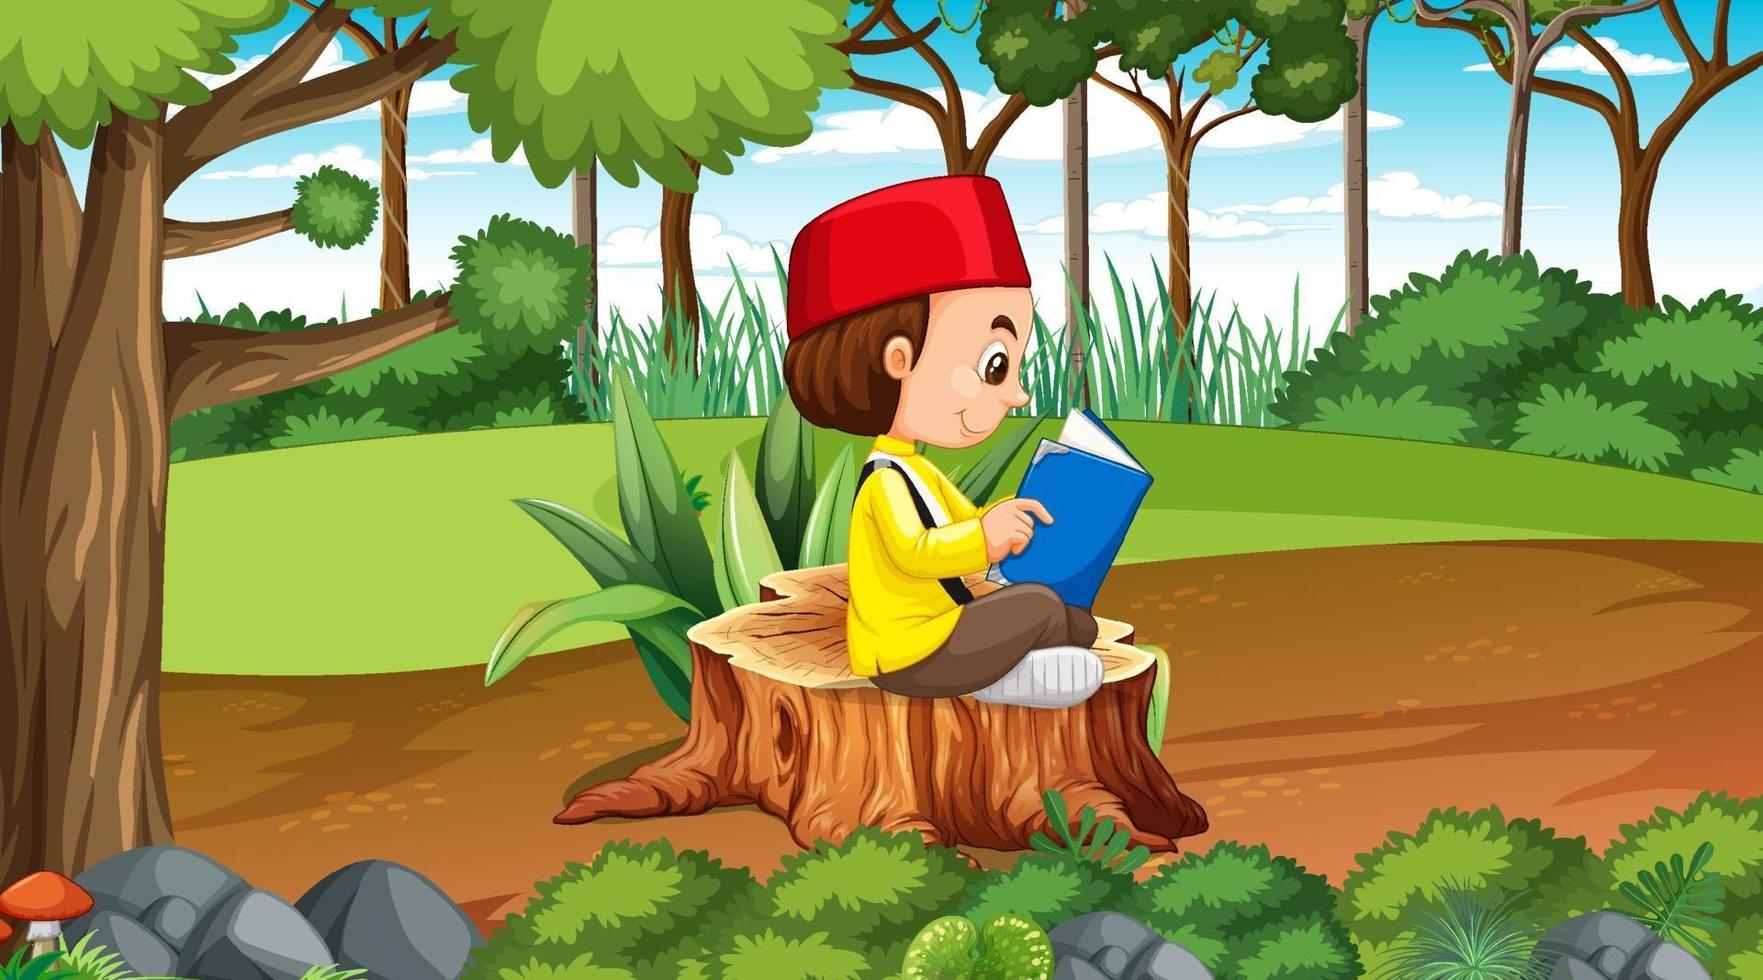 brunei kids dragen traditionele kleding en lezen een boek in het bos vector